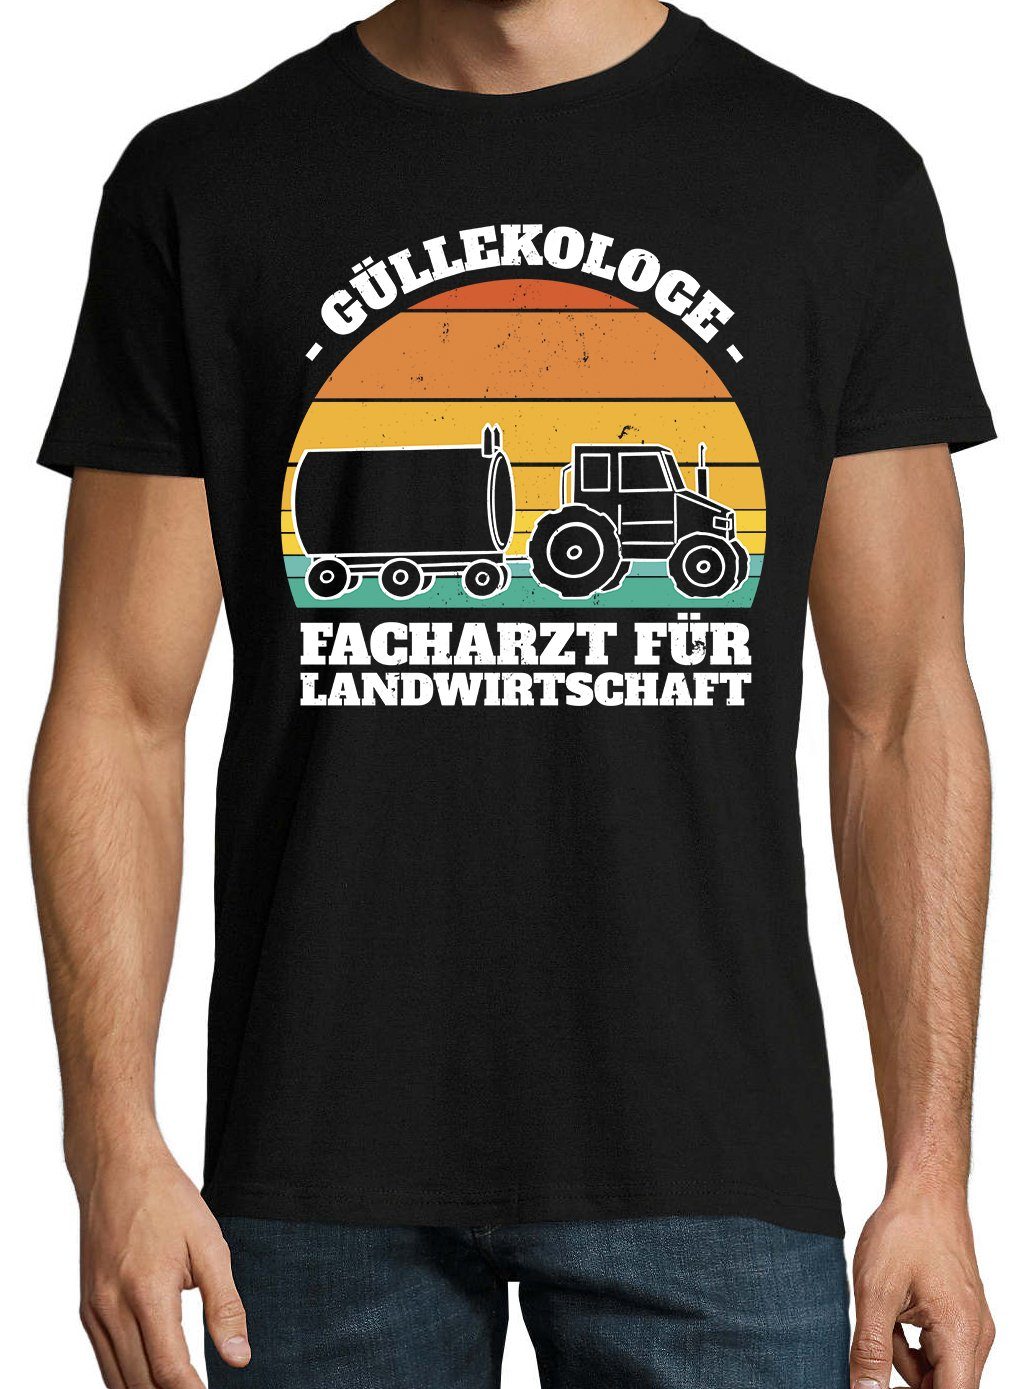 Youth Designz T-Shirt Güllekologe Herren Shirt Schwarz Frontprint mit lustigem Farmer